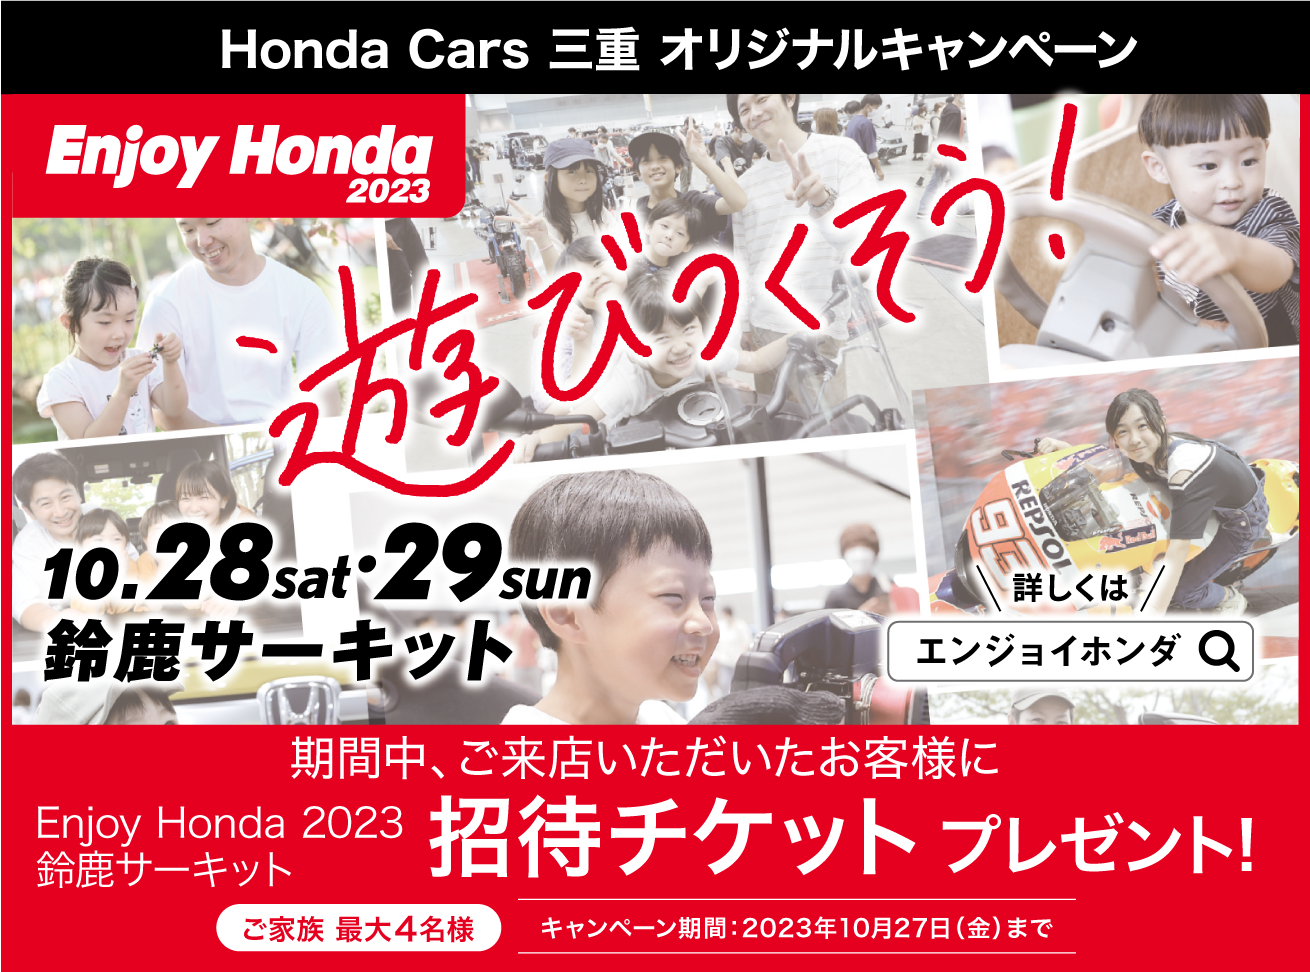 Enjoy Honda2023 鈴鹿サーキット 10/28.10/29-